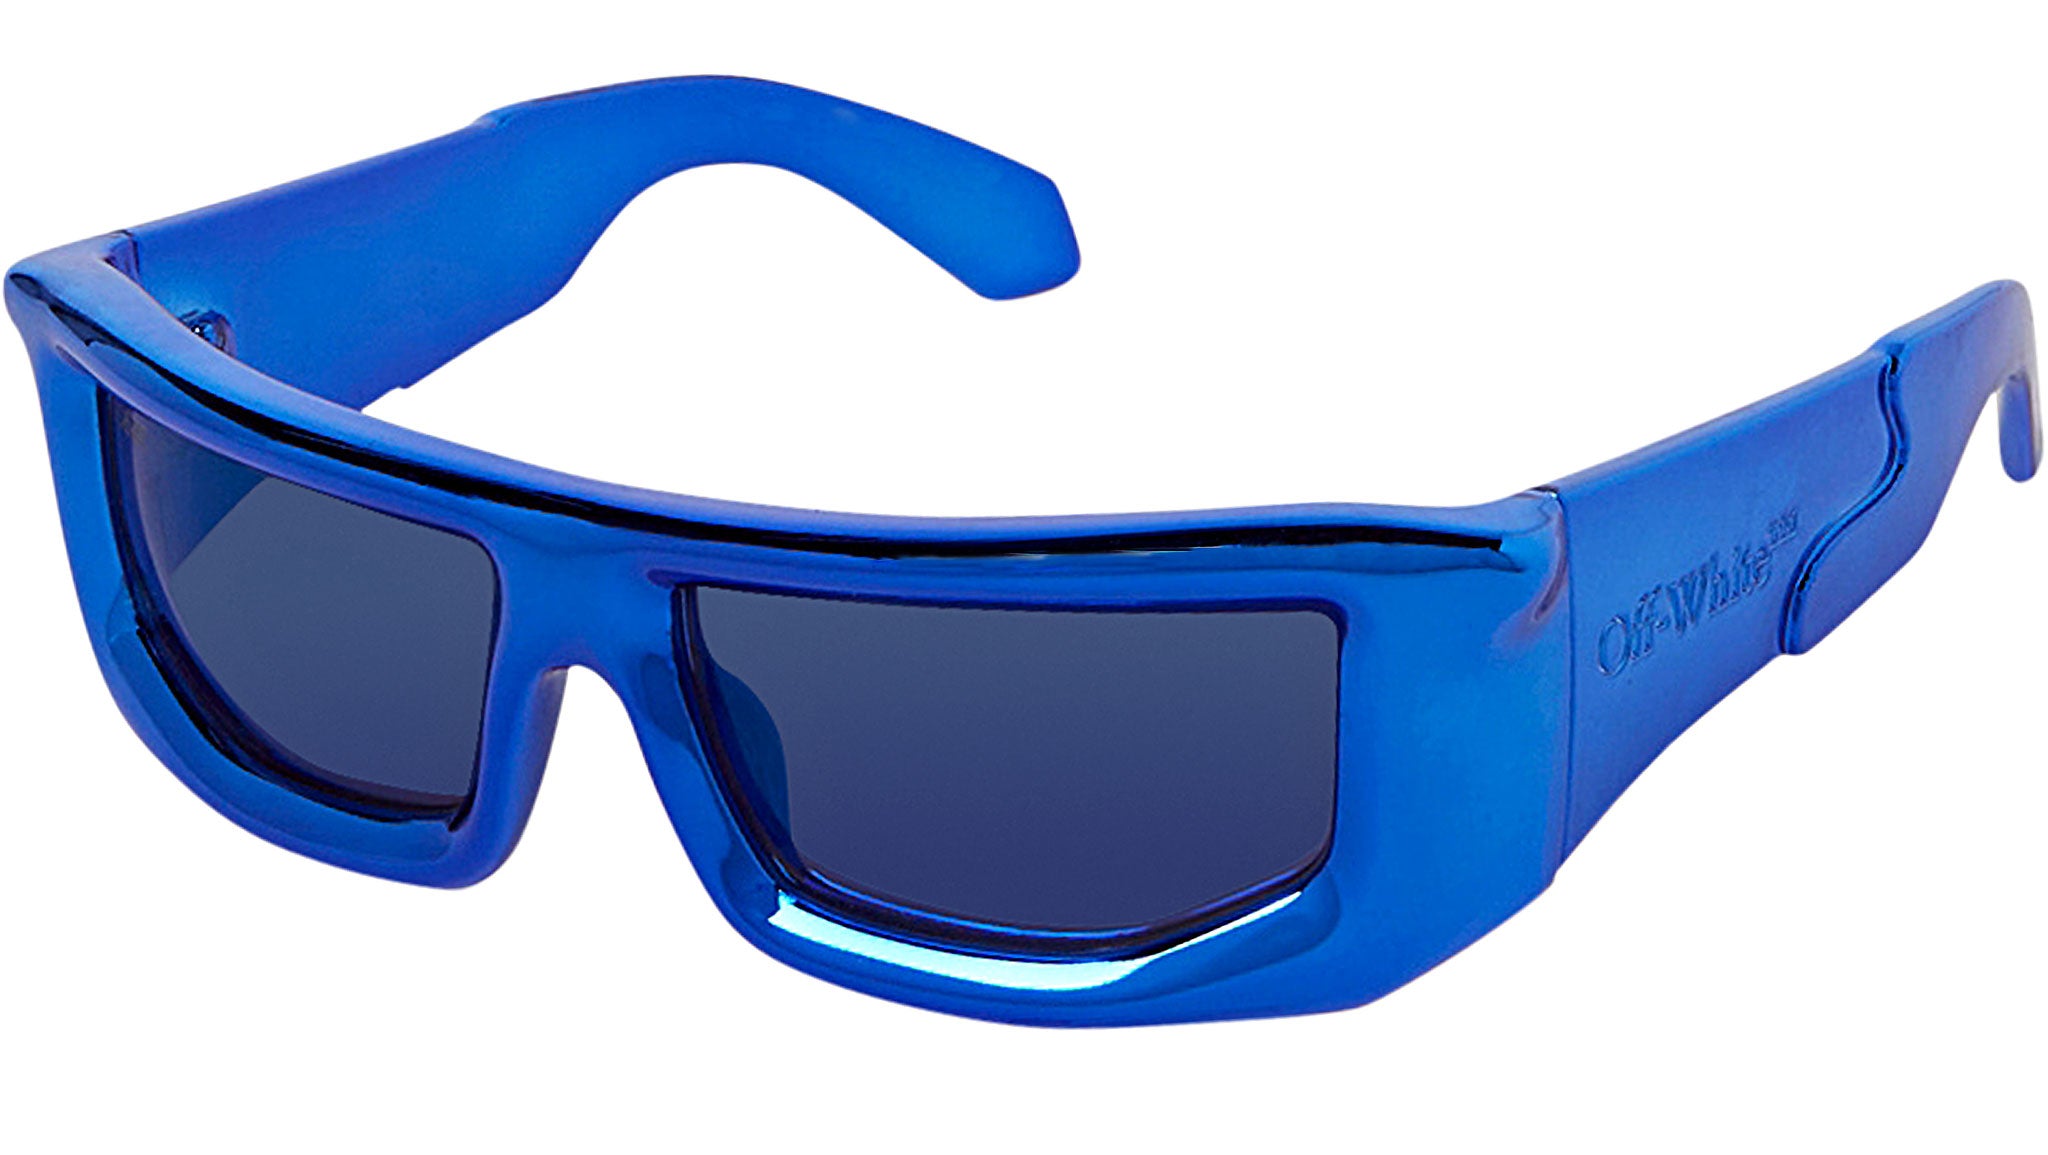 Off-White Virgil (Black w/ Blue Lens) Sunglasses - Black w/ Blue Lens